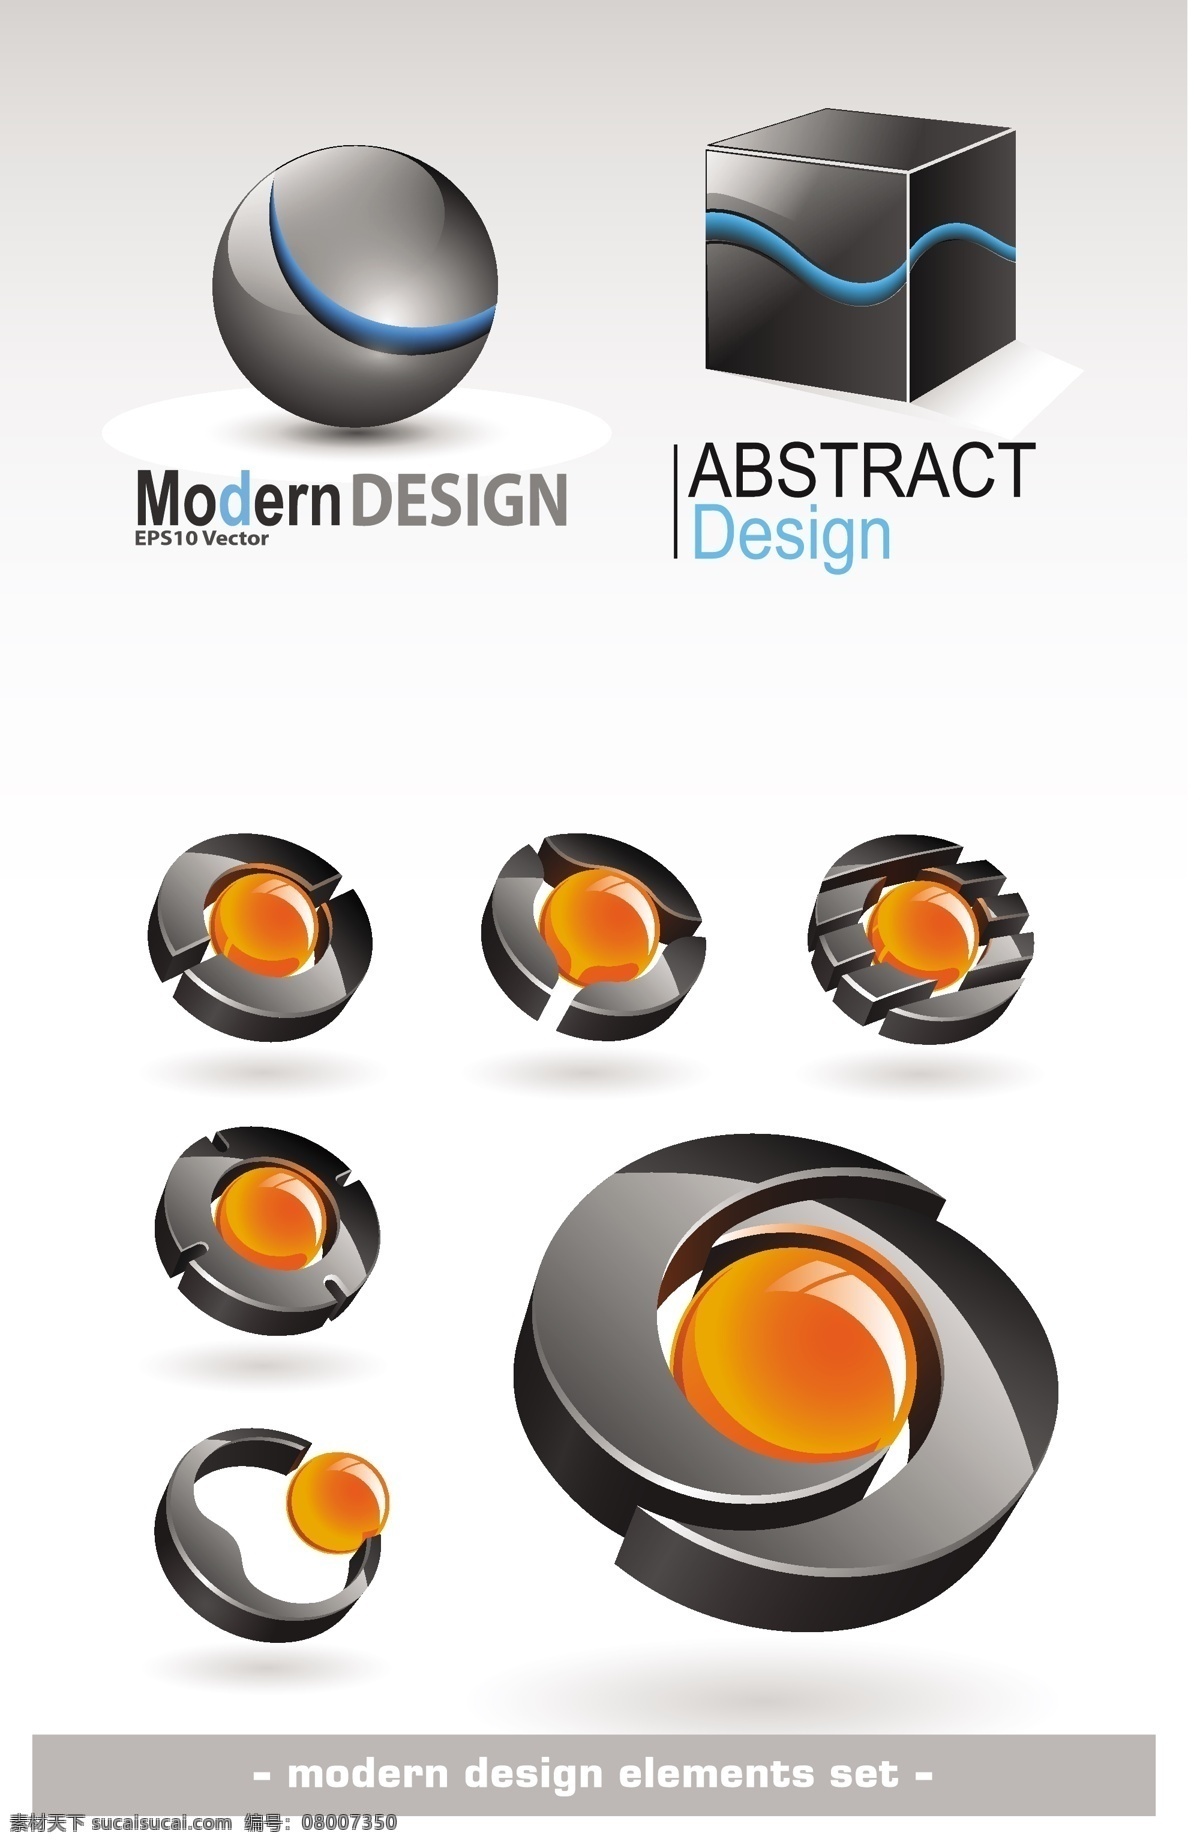 3d logo 标识标志图标 标志 抽象 方块 立体 矢量素材 矢量图标 艺术 图标 矢量 水晶球 旋转 小图标 psd源文件 logo设计